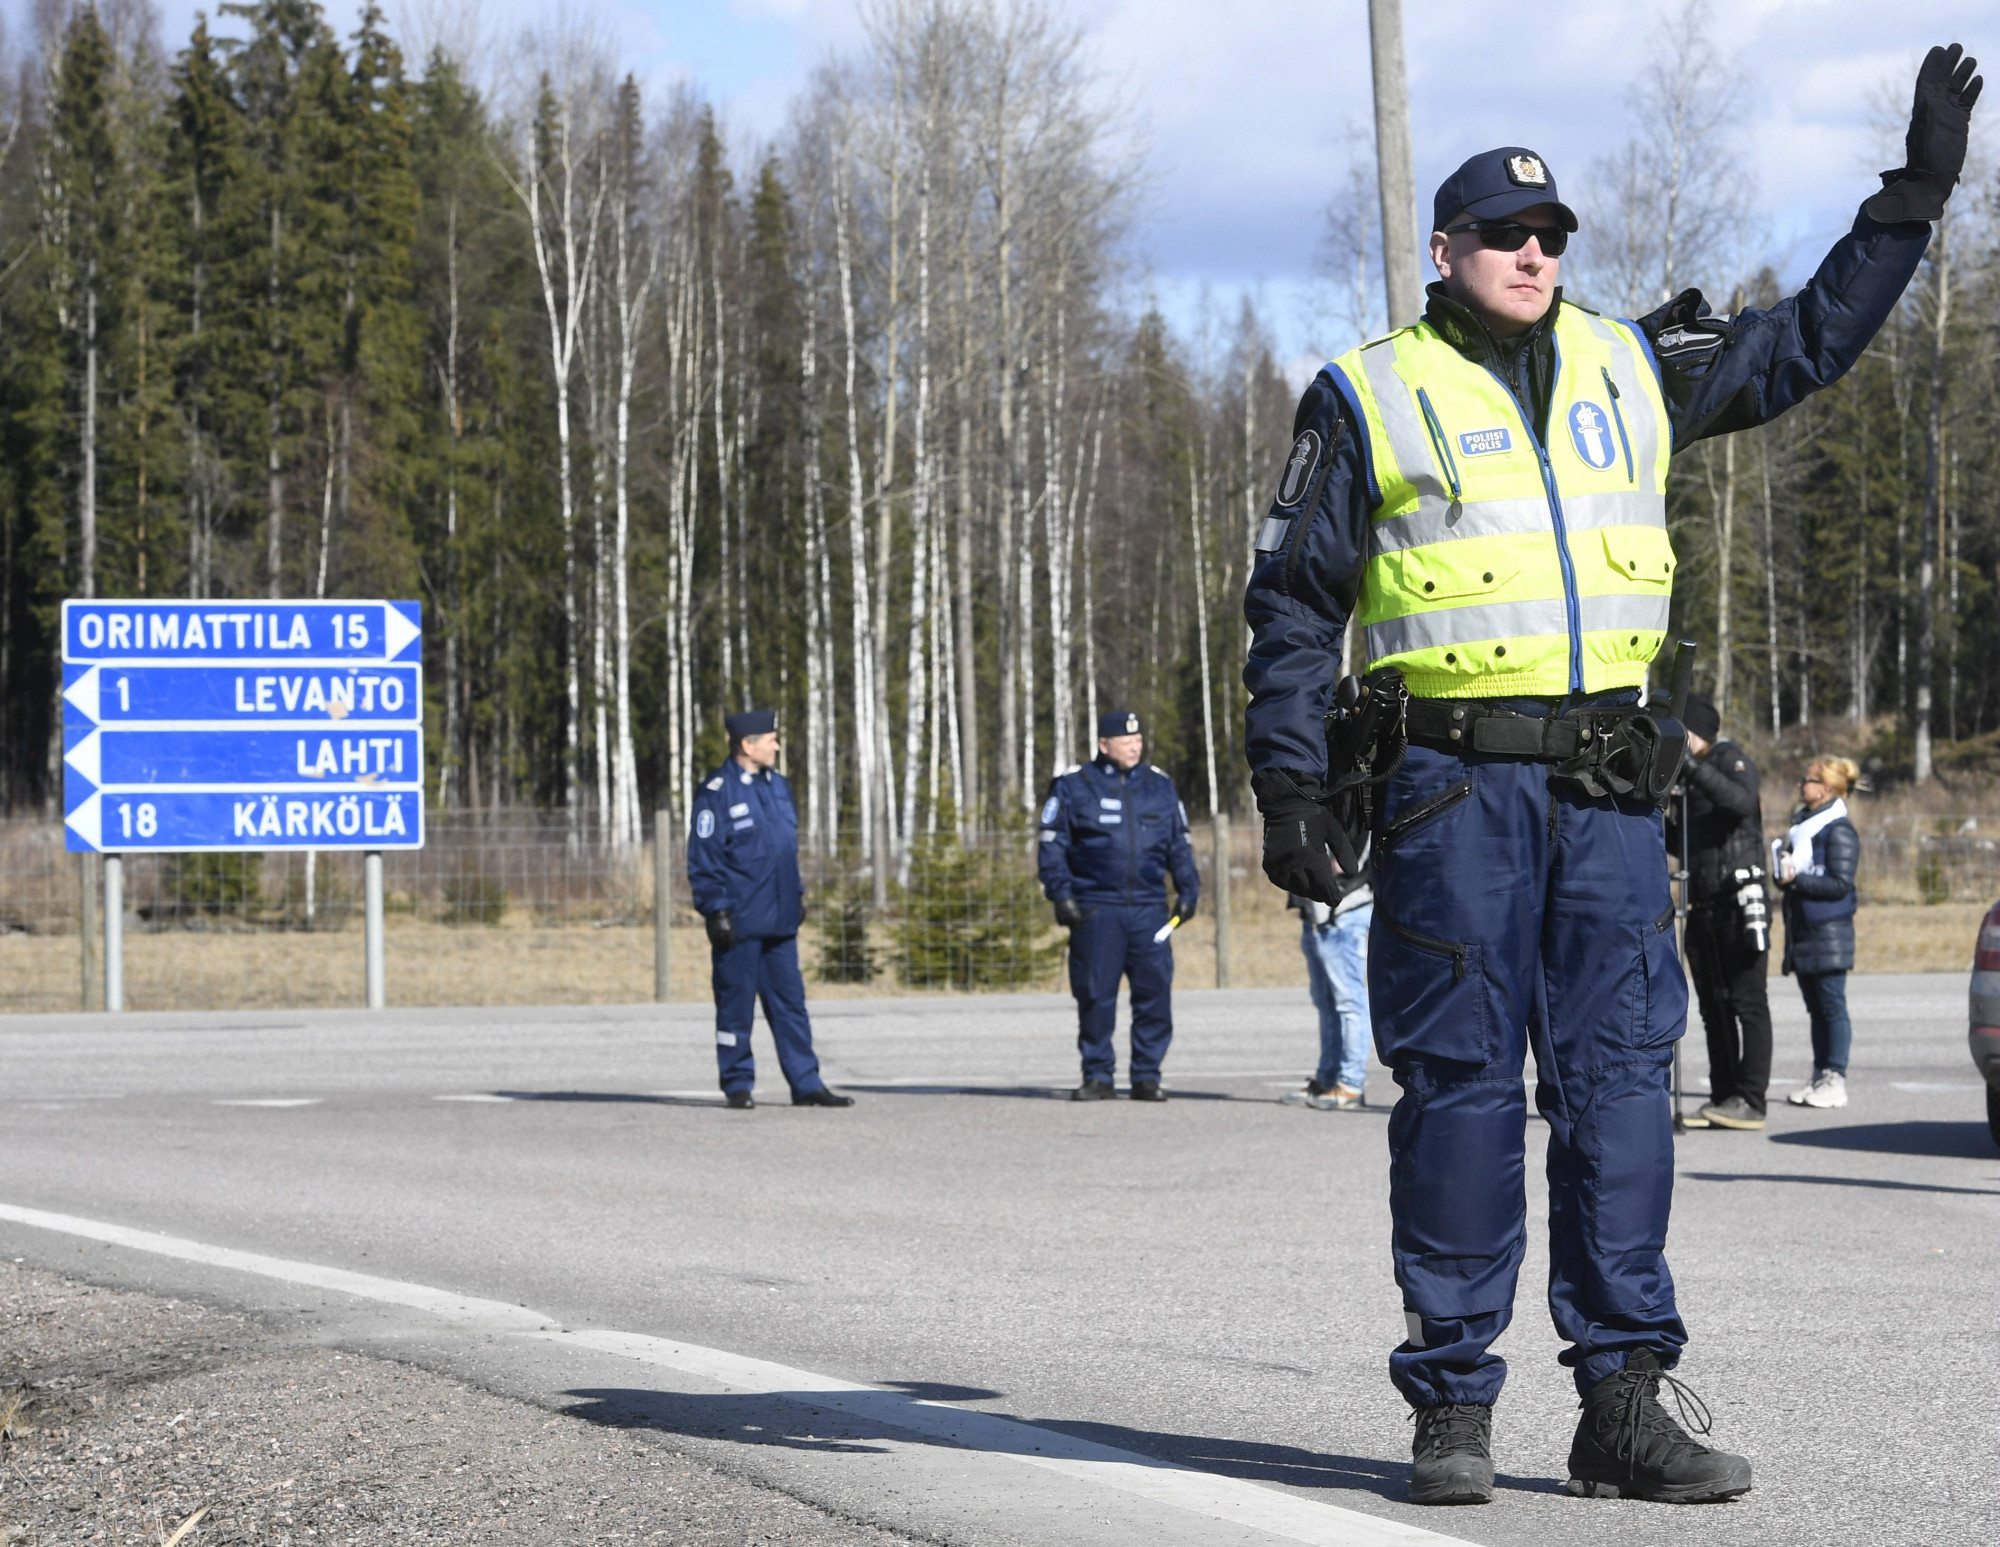 Határkerítés építéséről döntött a finn parlament